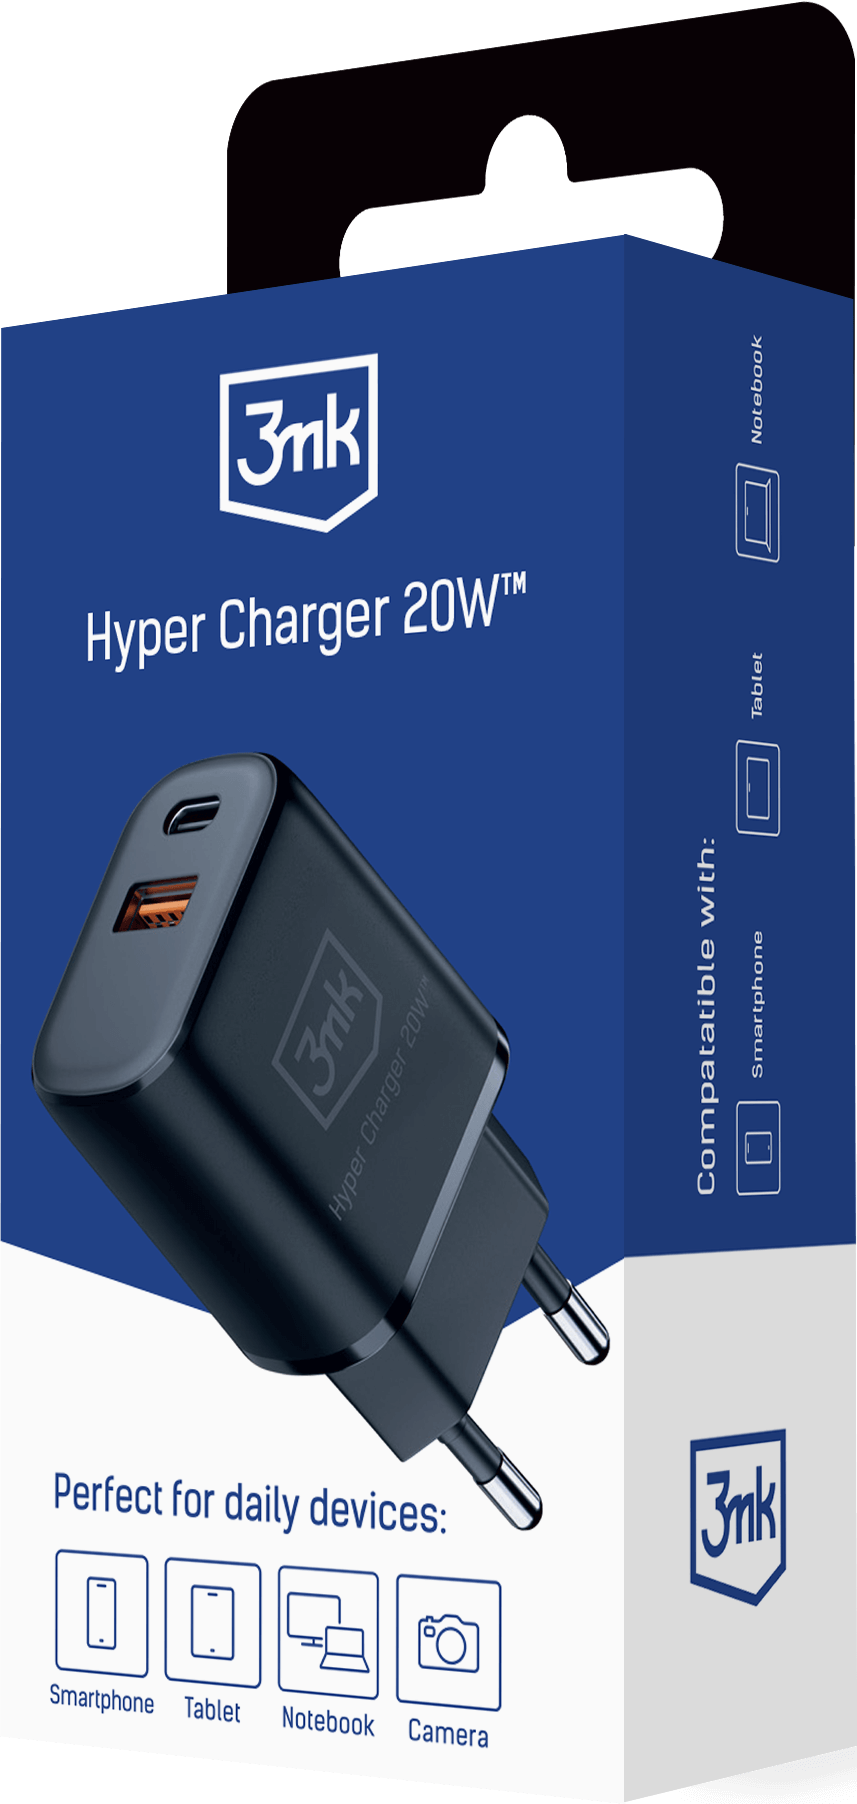 3mk-packshot-Hyper-Charger-20W_-black